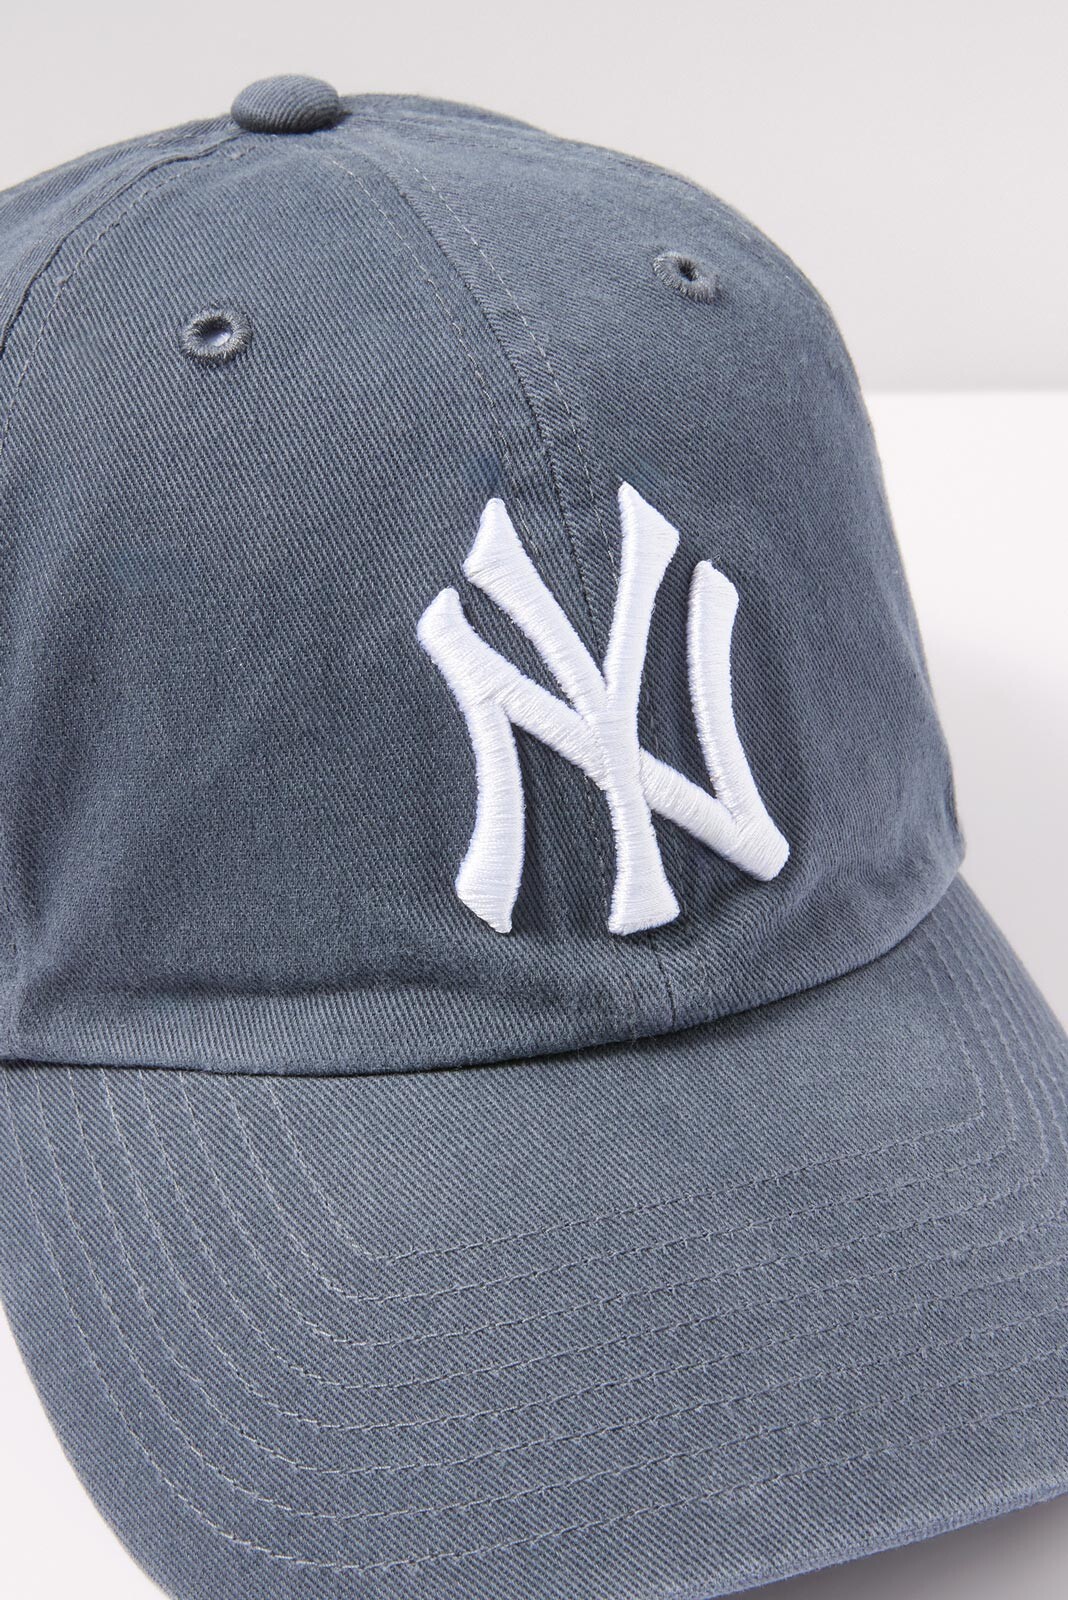 NY Baseball Hat